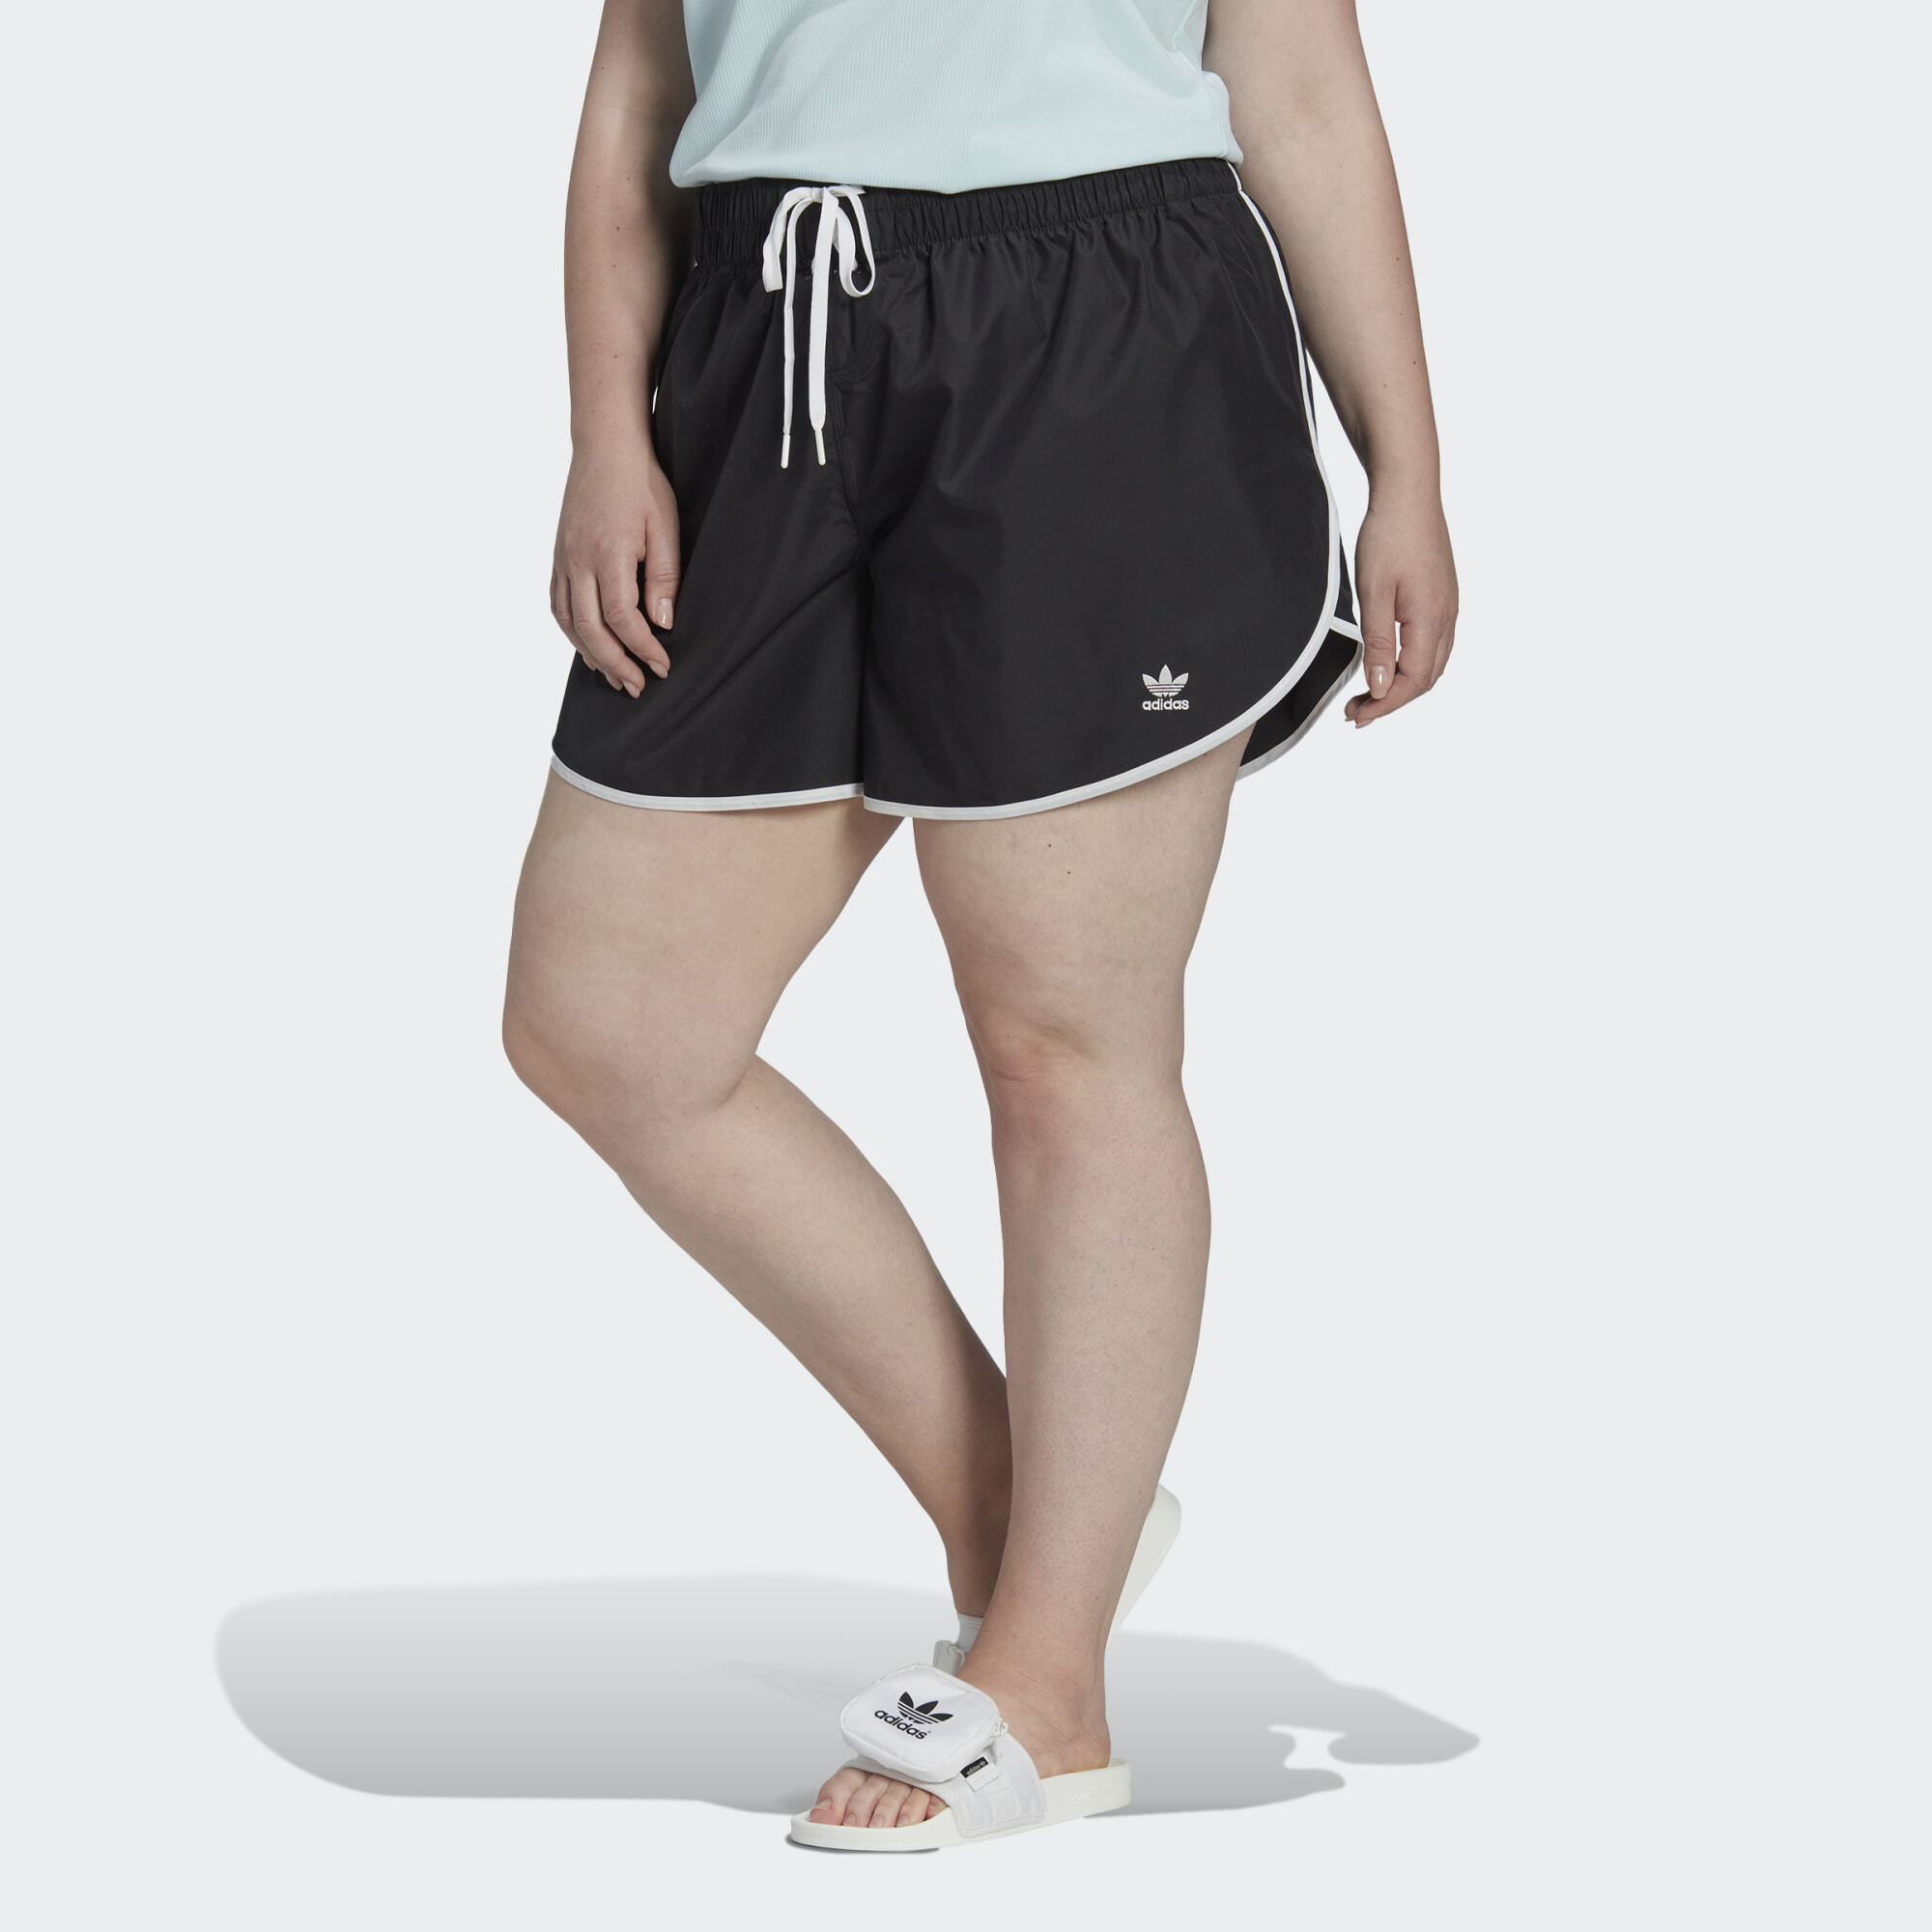 adidas Originals Always Original Laced Shorts (Plus Size) (9000122536_1469)